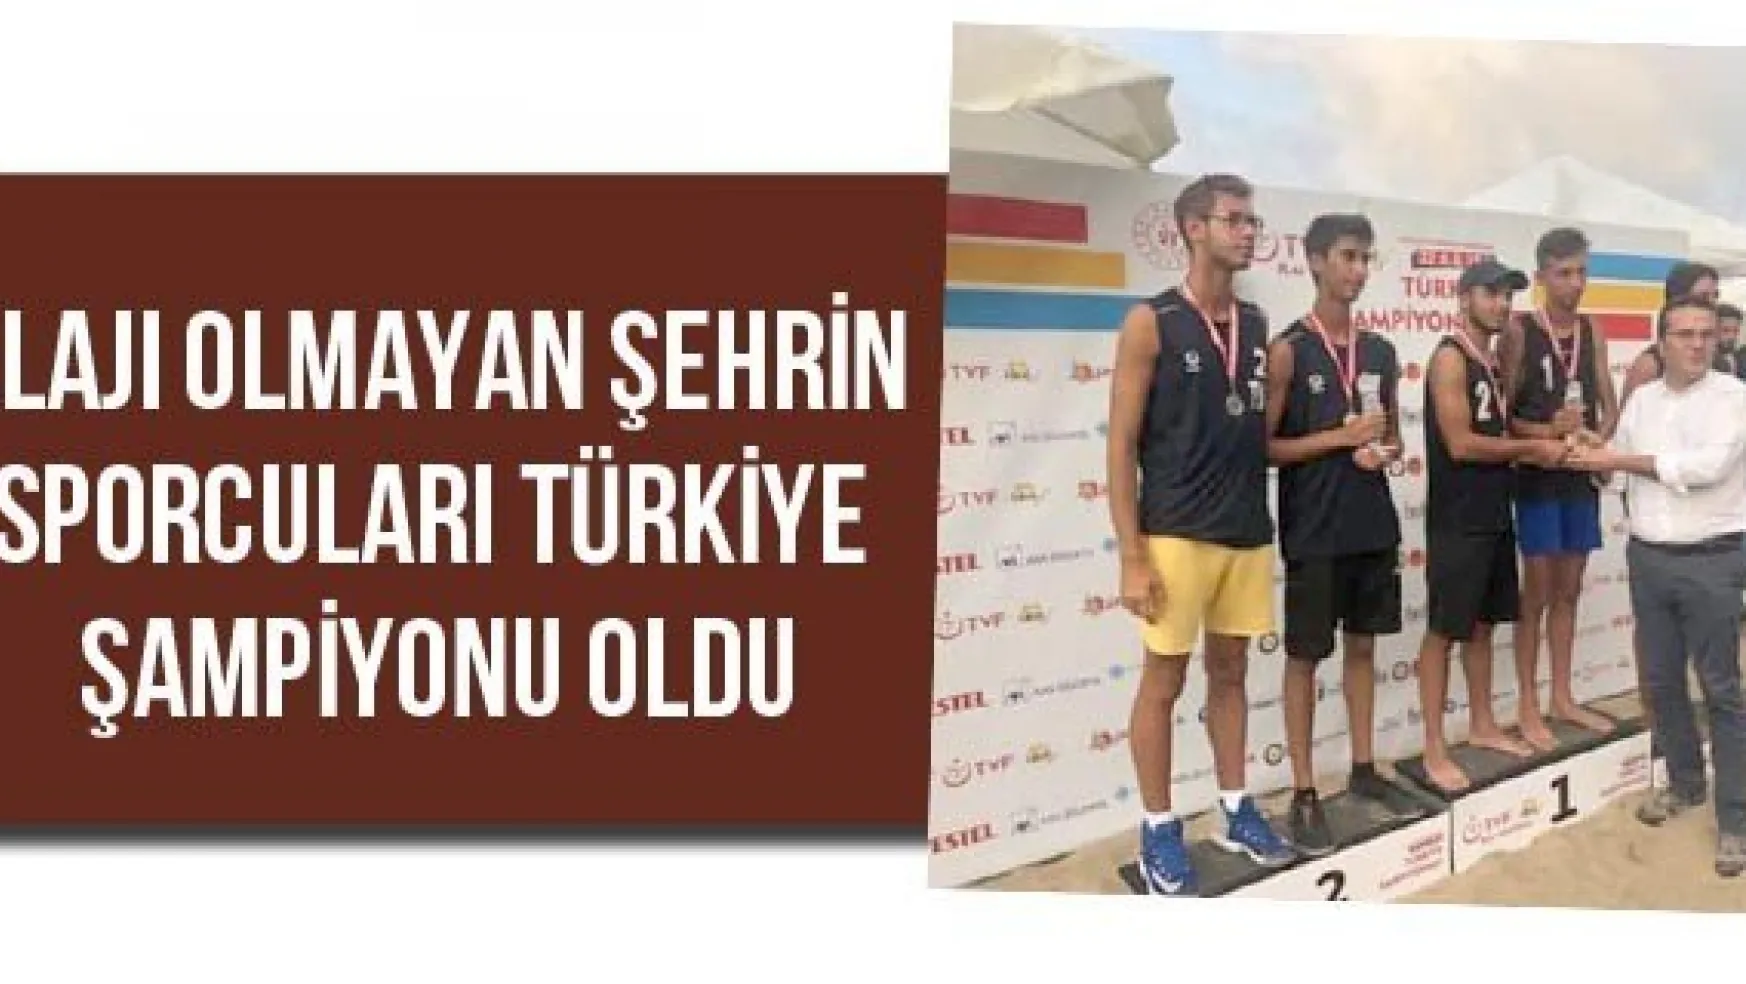 Plajı olmayan şehrin sporcuları Türkiye şampiyonu oldu